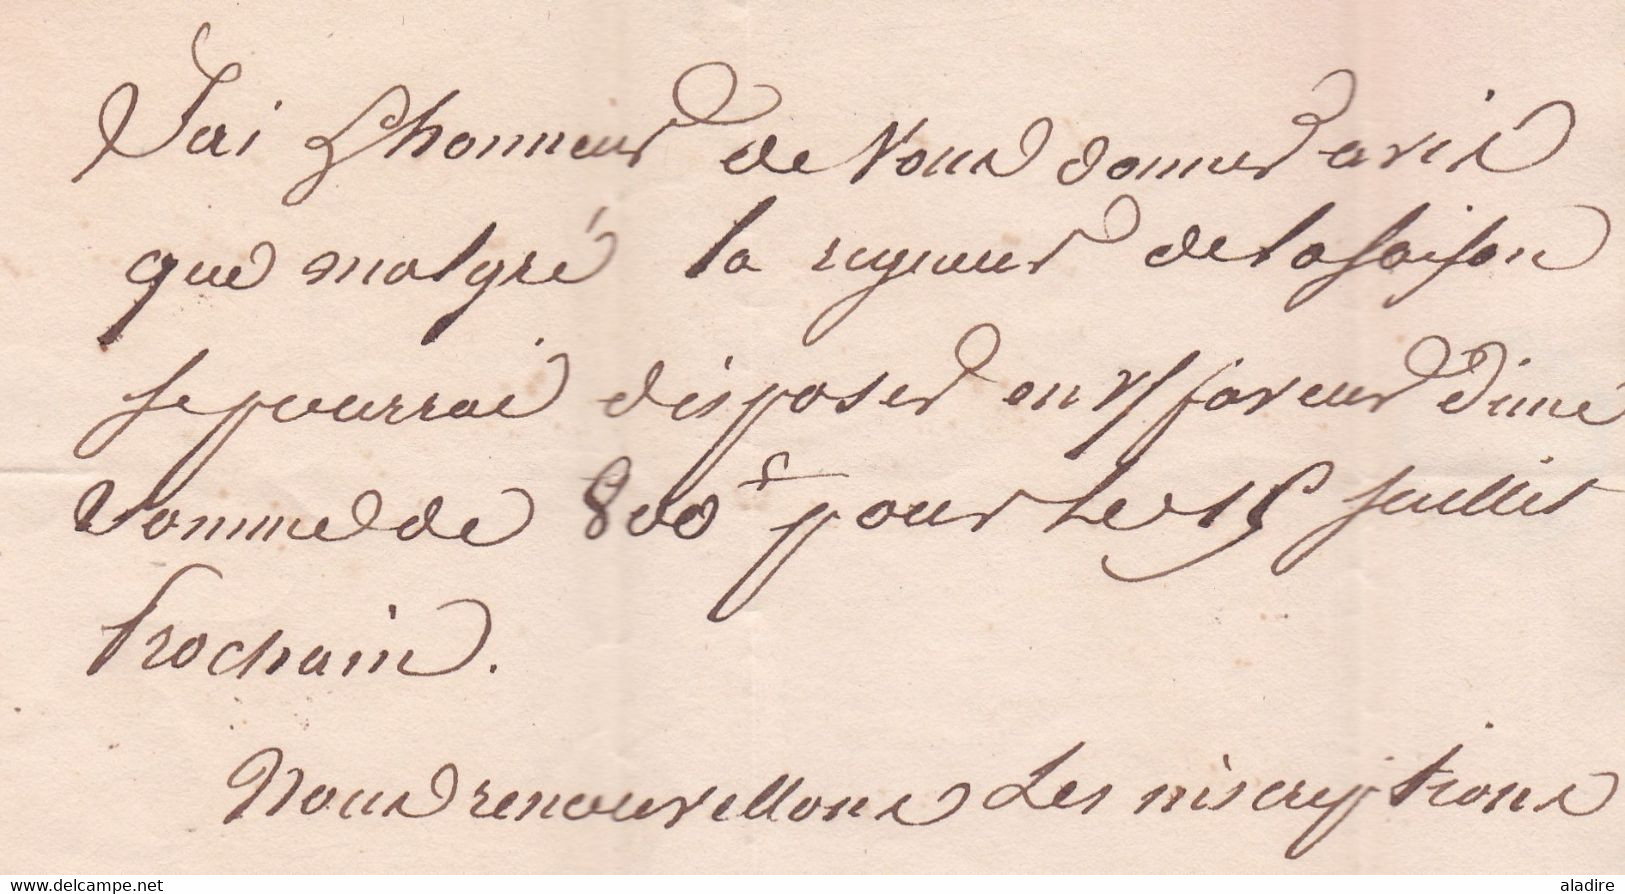 1830 - Marque postale 83 SENS sur lettre pliée avec correspondance vers DIJON - dateur en arrivée